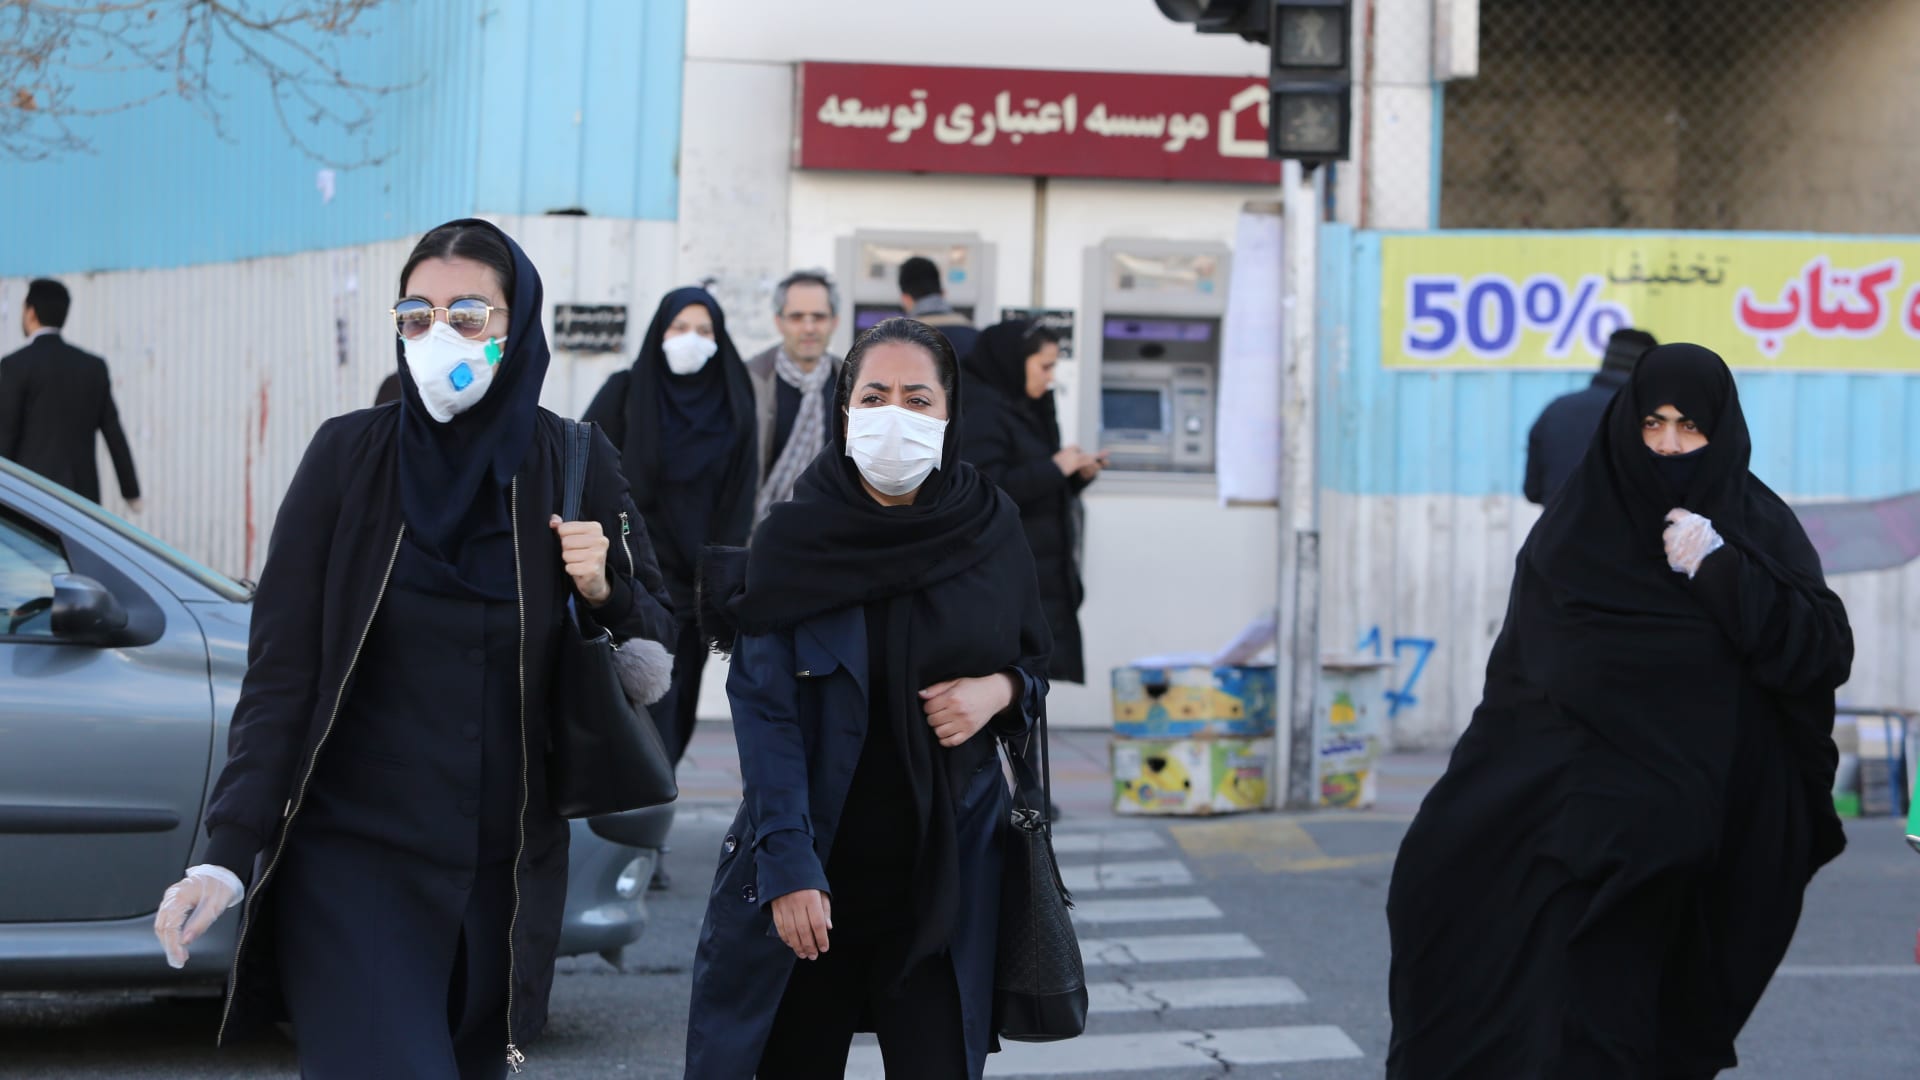 معدل الوفاة من فيروس كورونا في إيران أعلى بكثير من المتوسط العالمي..لماذا؟